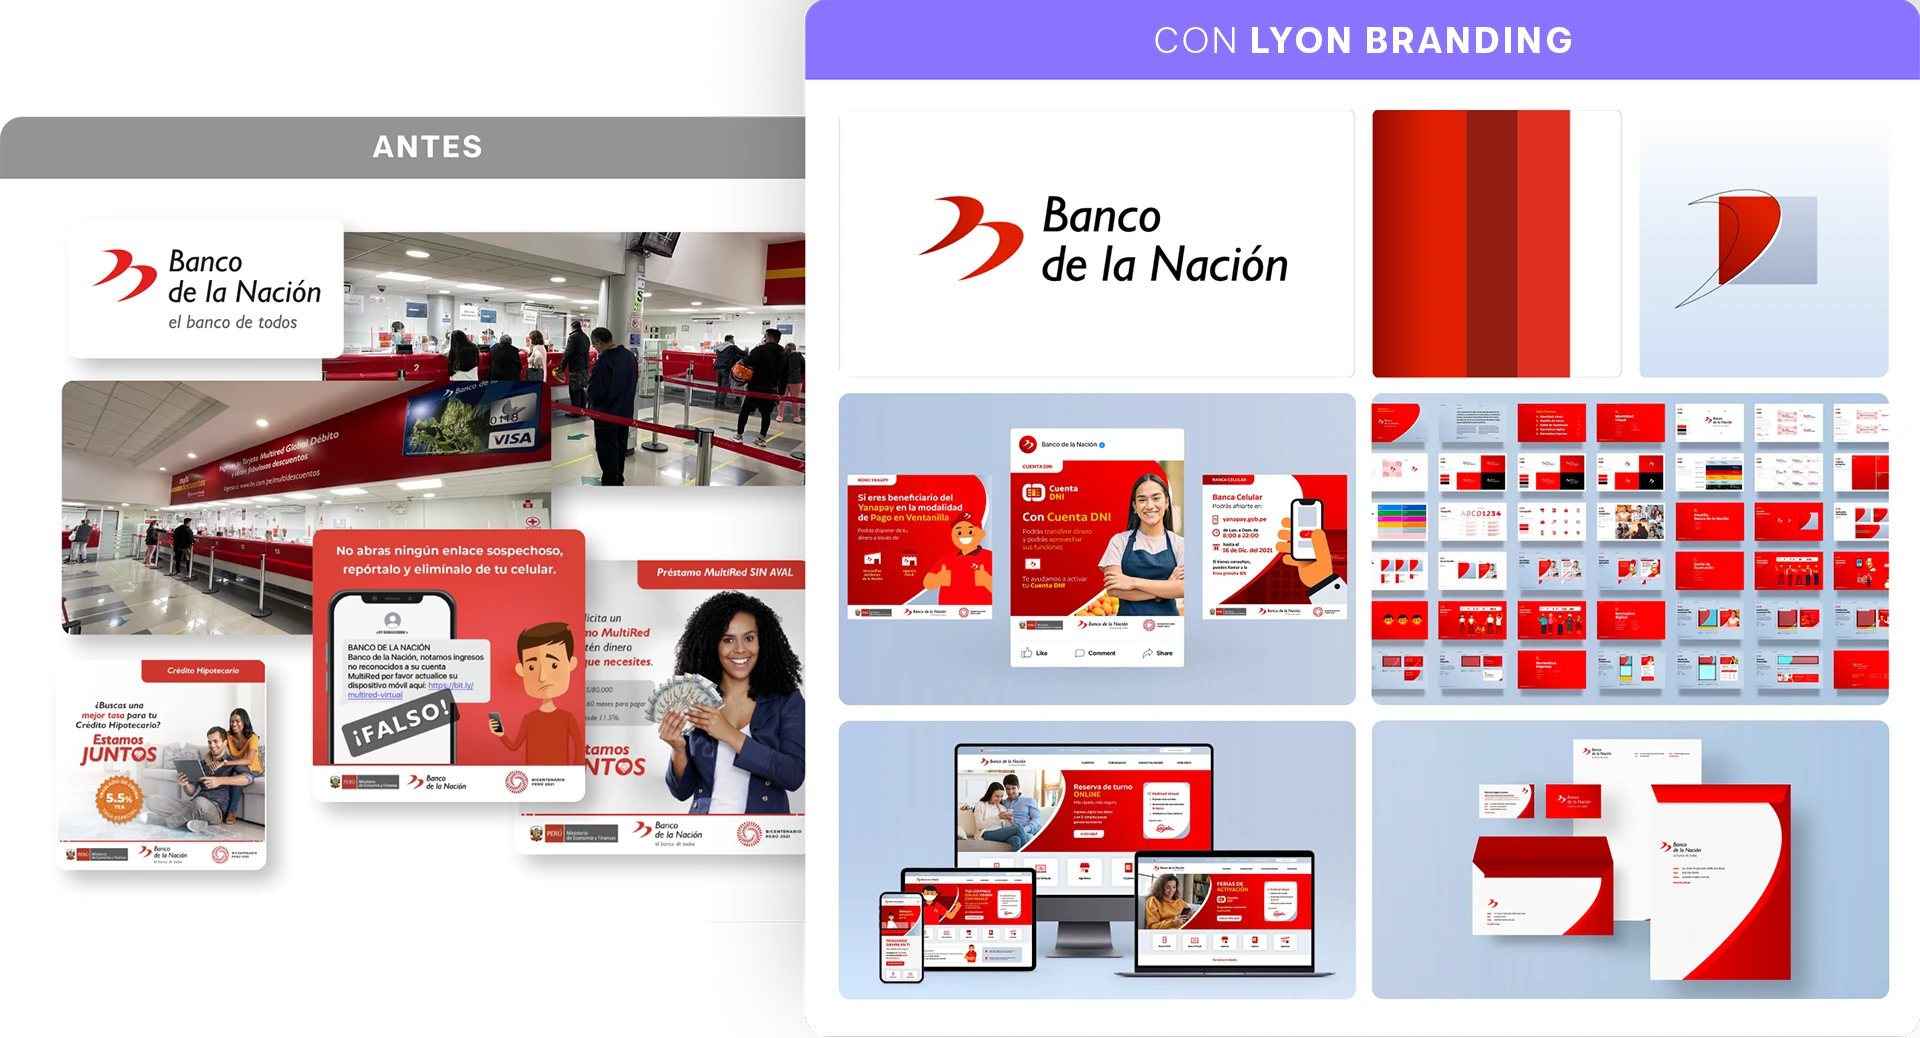 Lyon Agencia de Branding - Proyecto Banco de la Nación